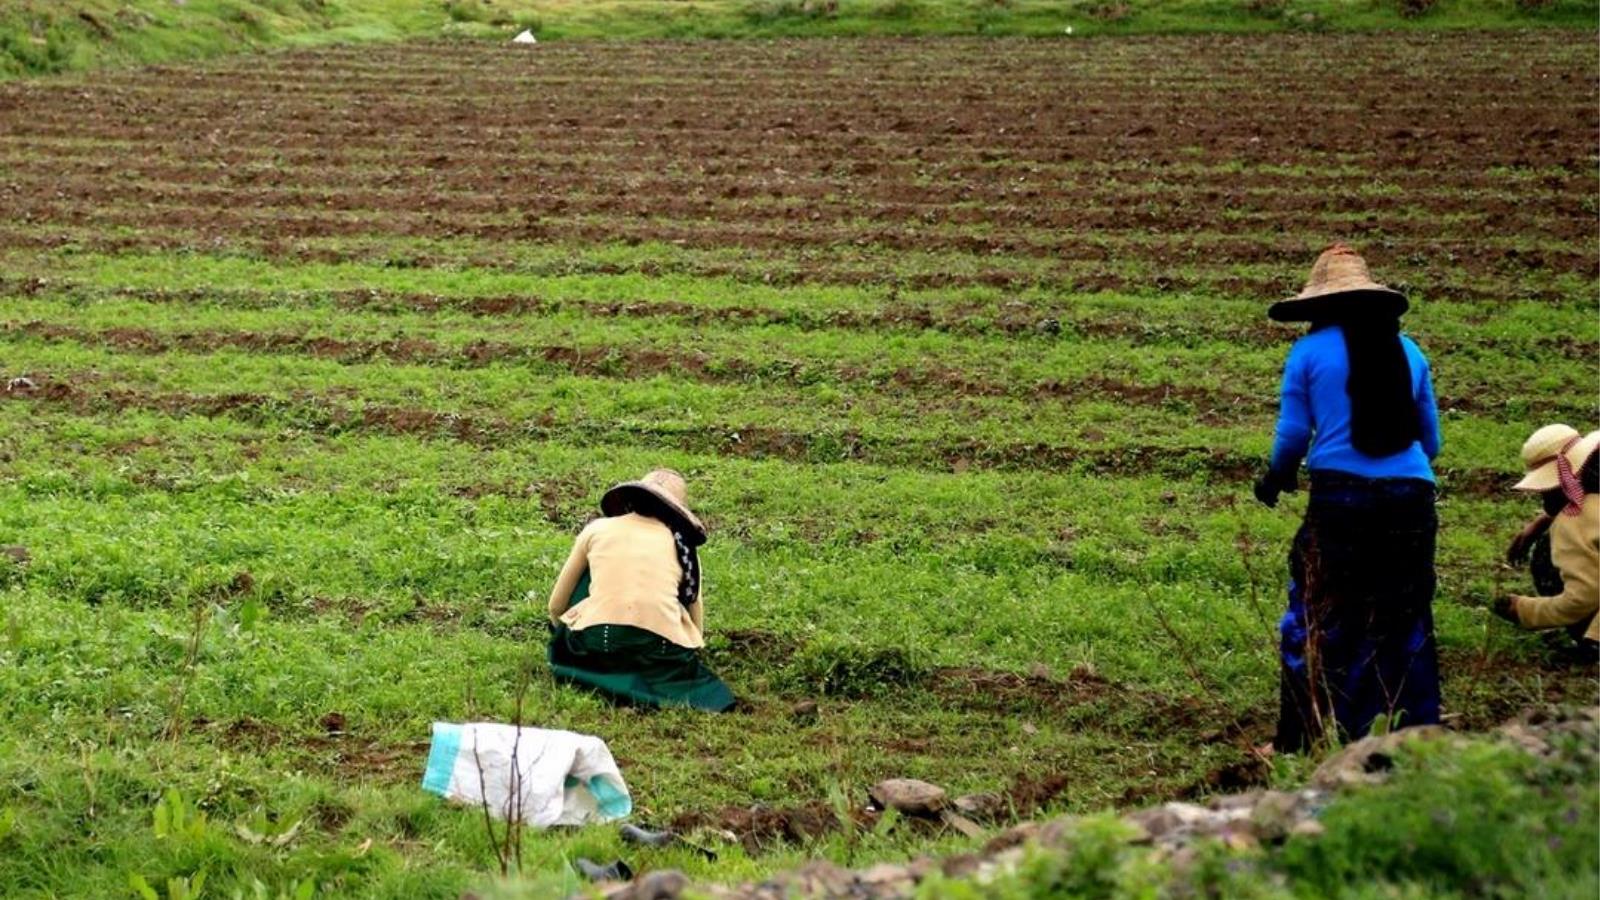 ‪المرأة الريفية تمارس الزراعة وتتحمل الكثير من أعباء الحياة خلال الحرب في البلاد‬ (الجزيرة)